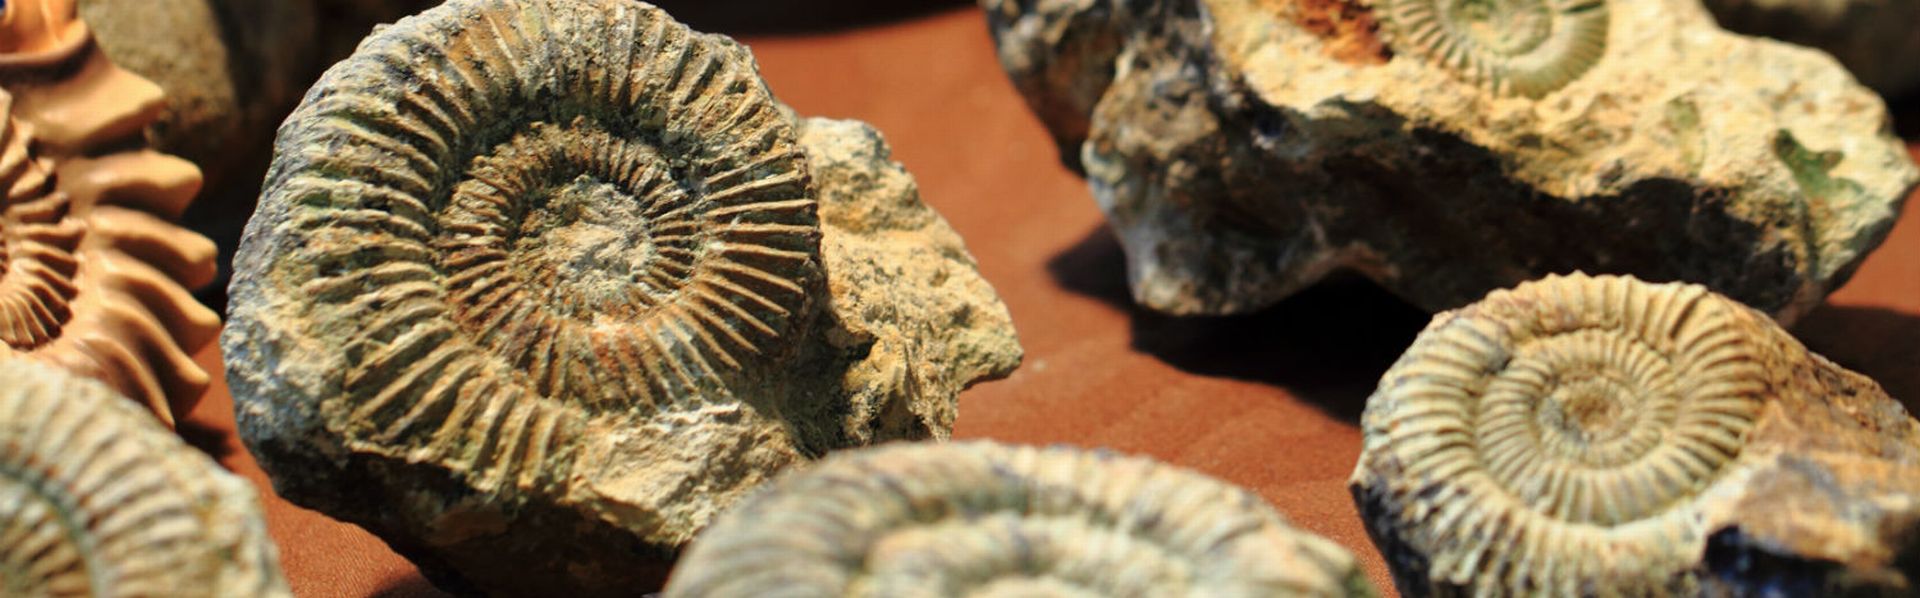 Le dossier sur les fossiles de RTS Découverte. [© jonnysek - Fotolia]